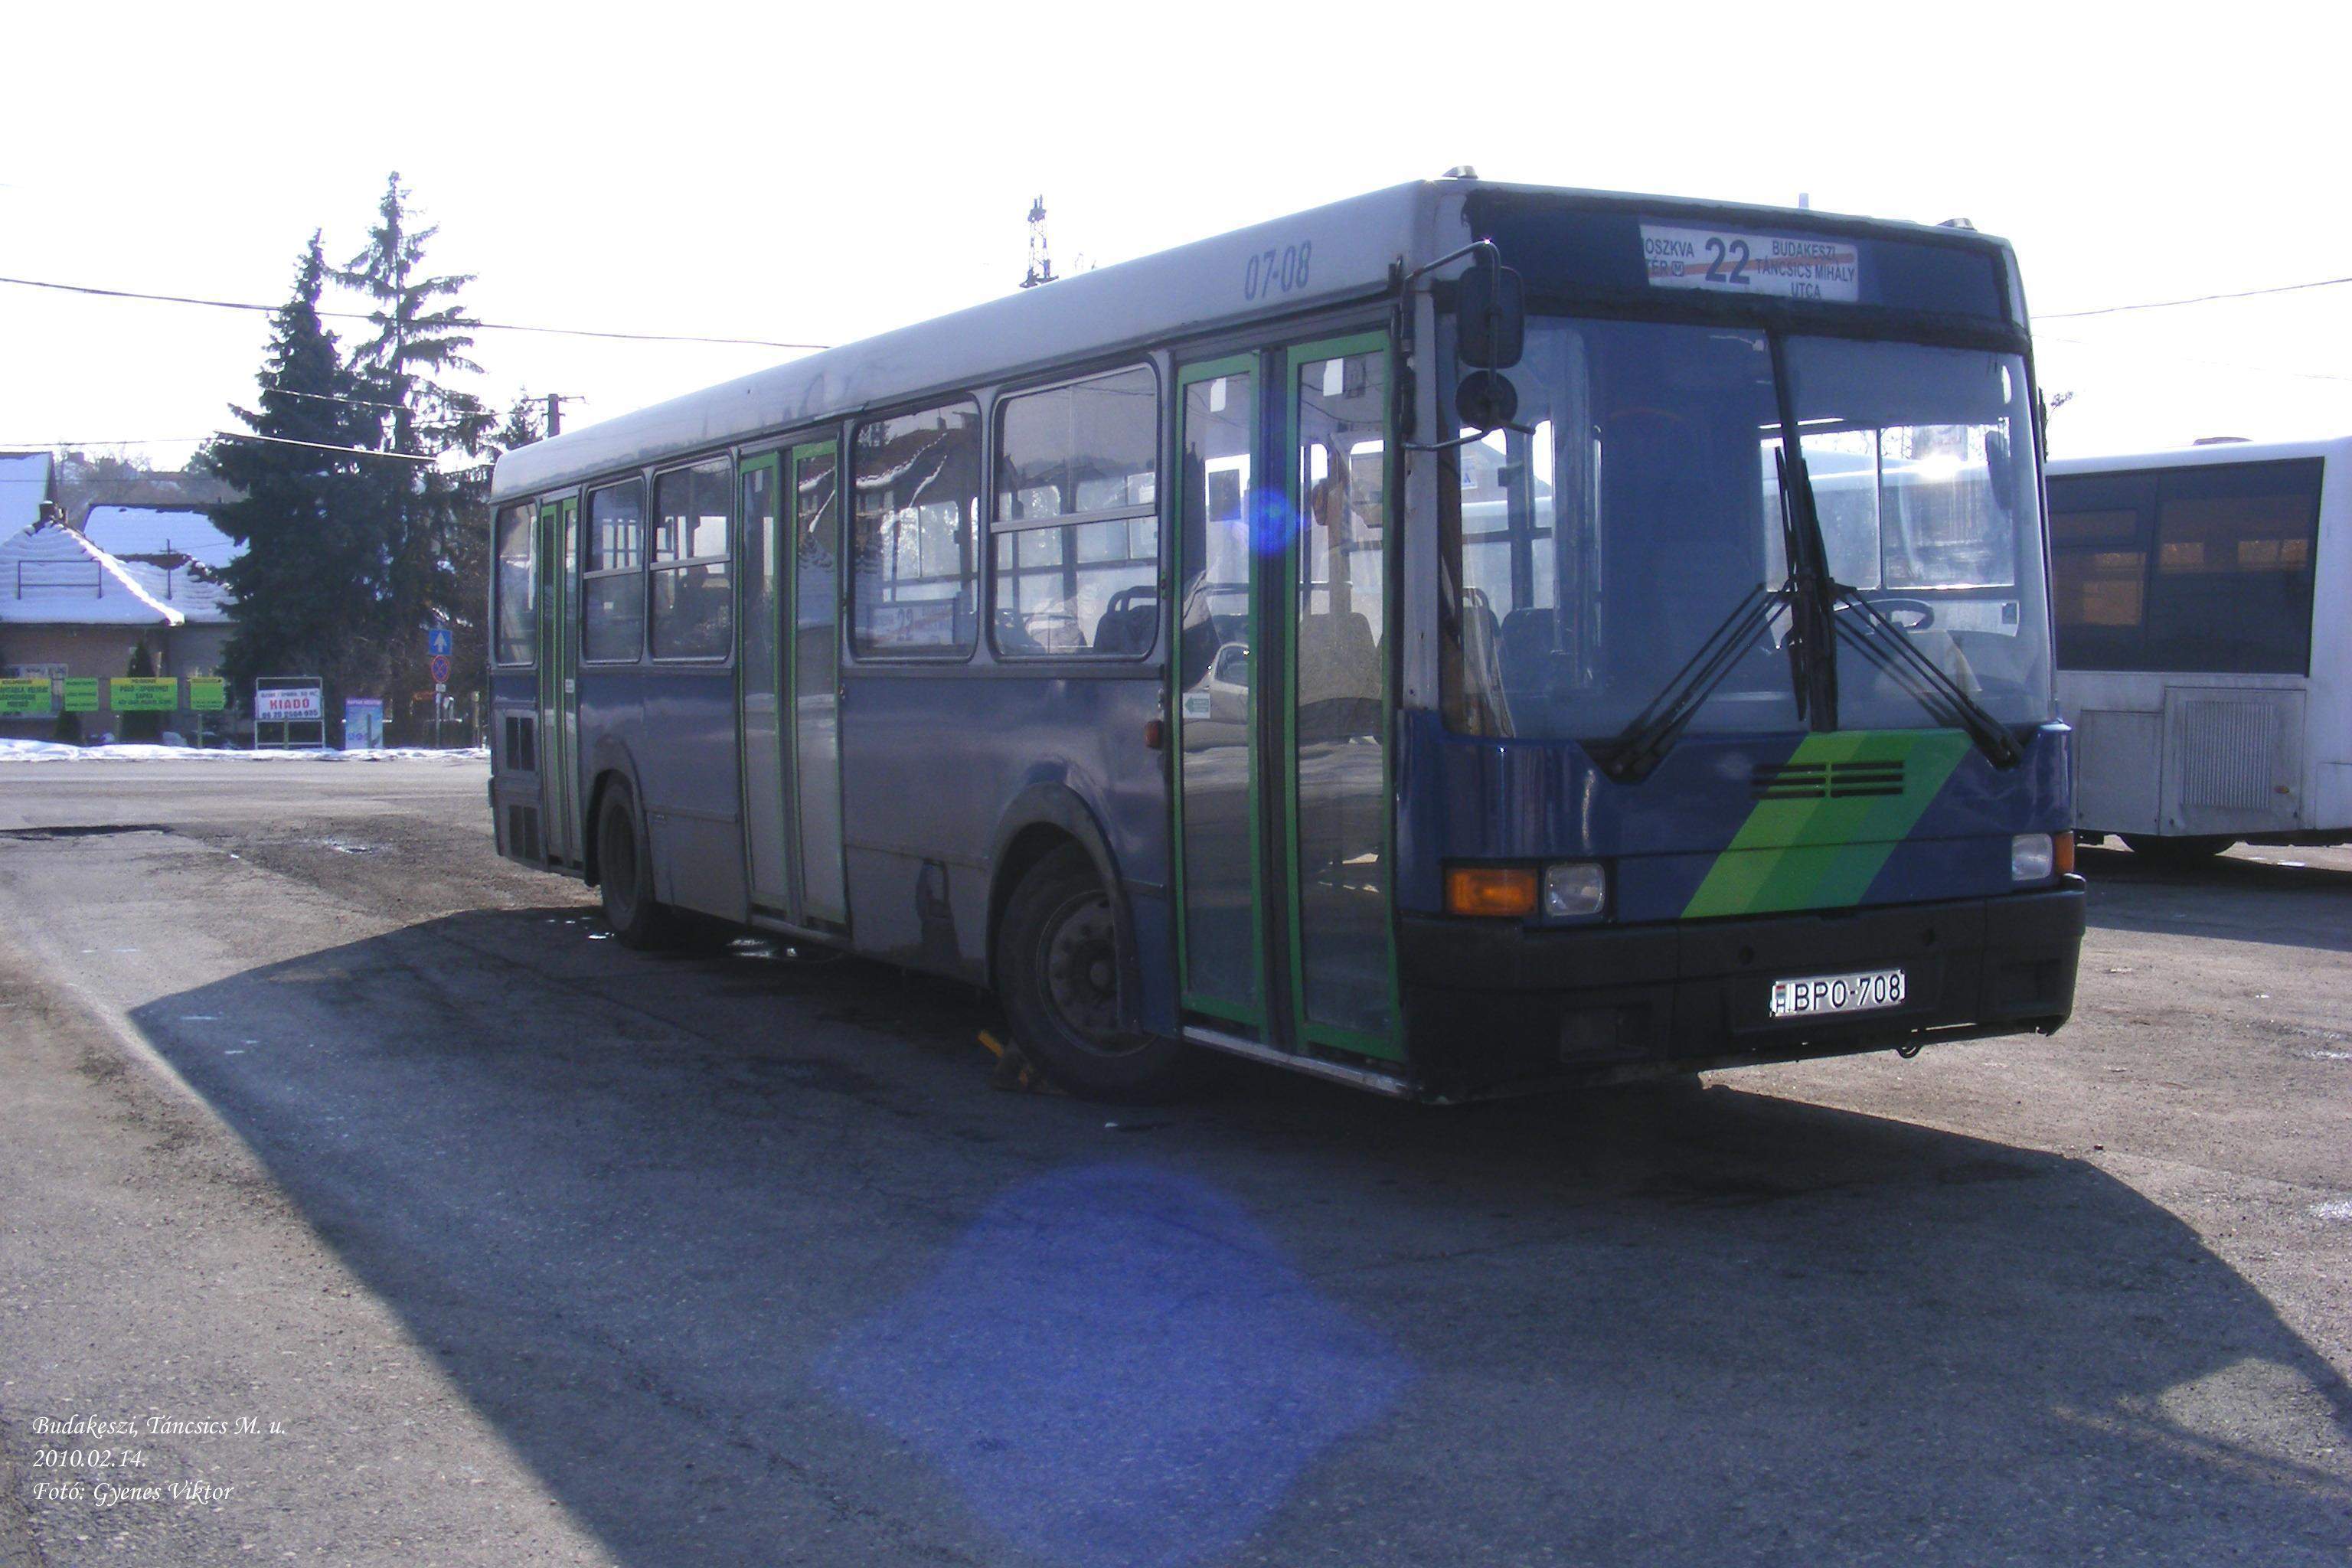 Busz BPO-708.jpg